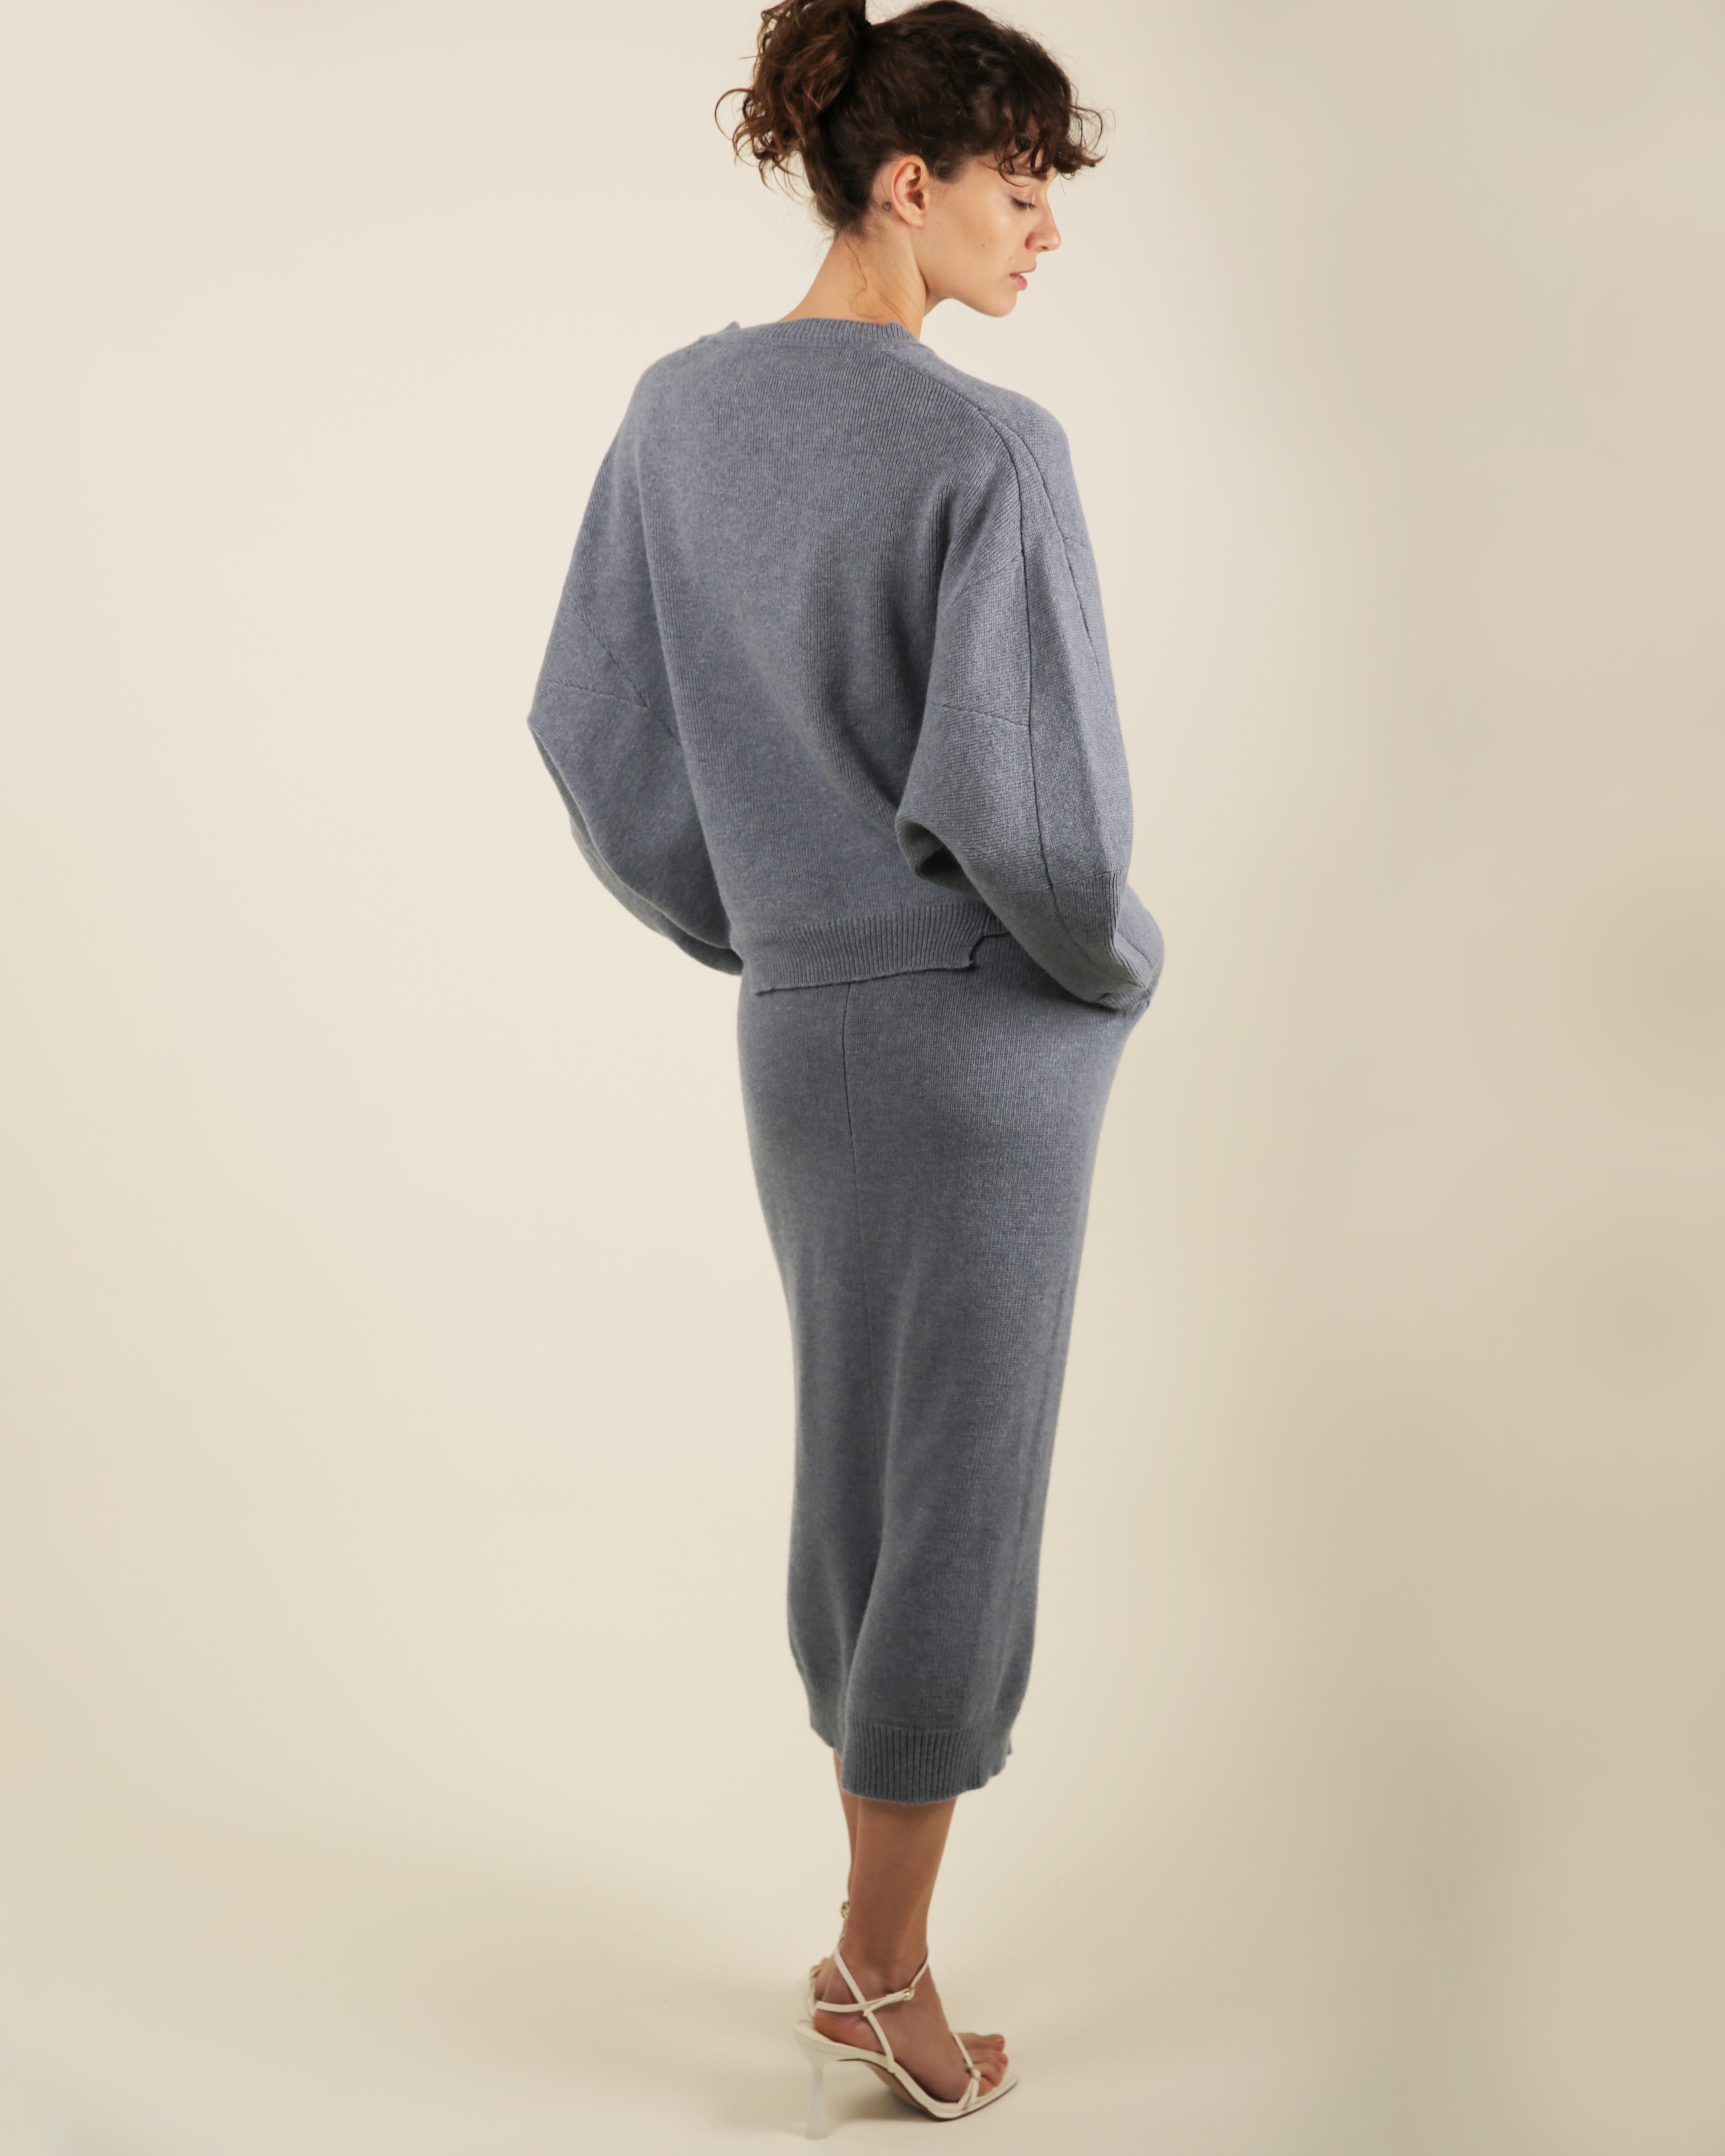 Stella McCartney Fall18 blue oversized wool alpaca matching sweater dress pants For Sale 11